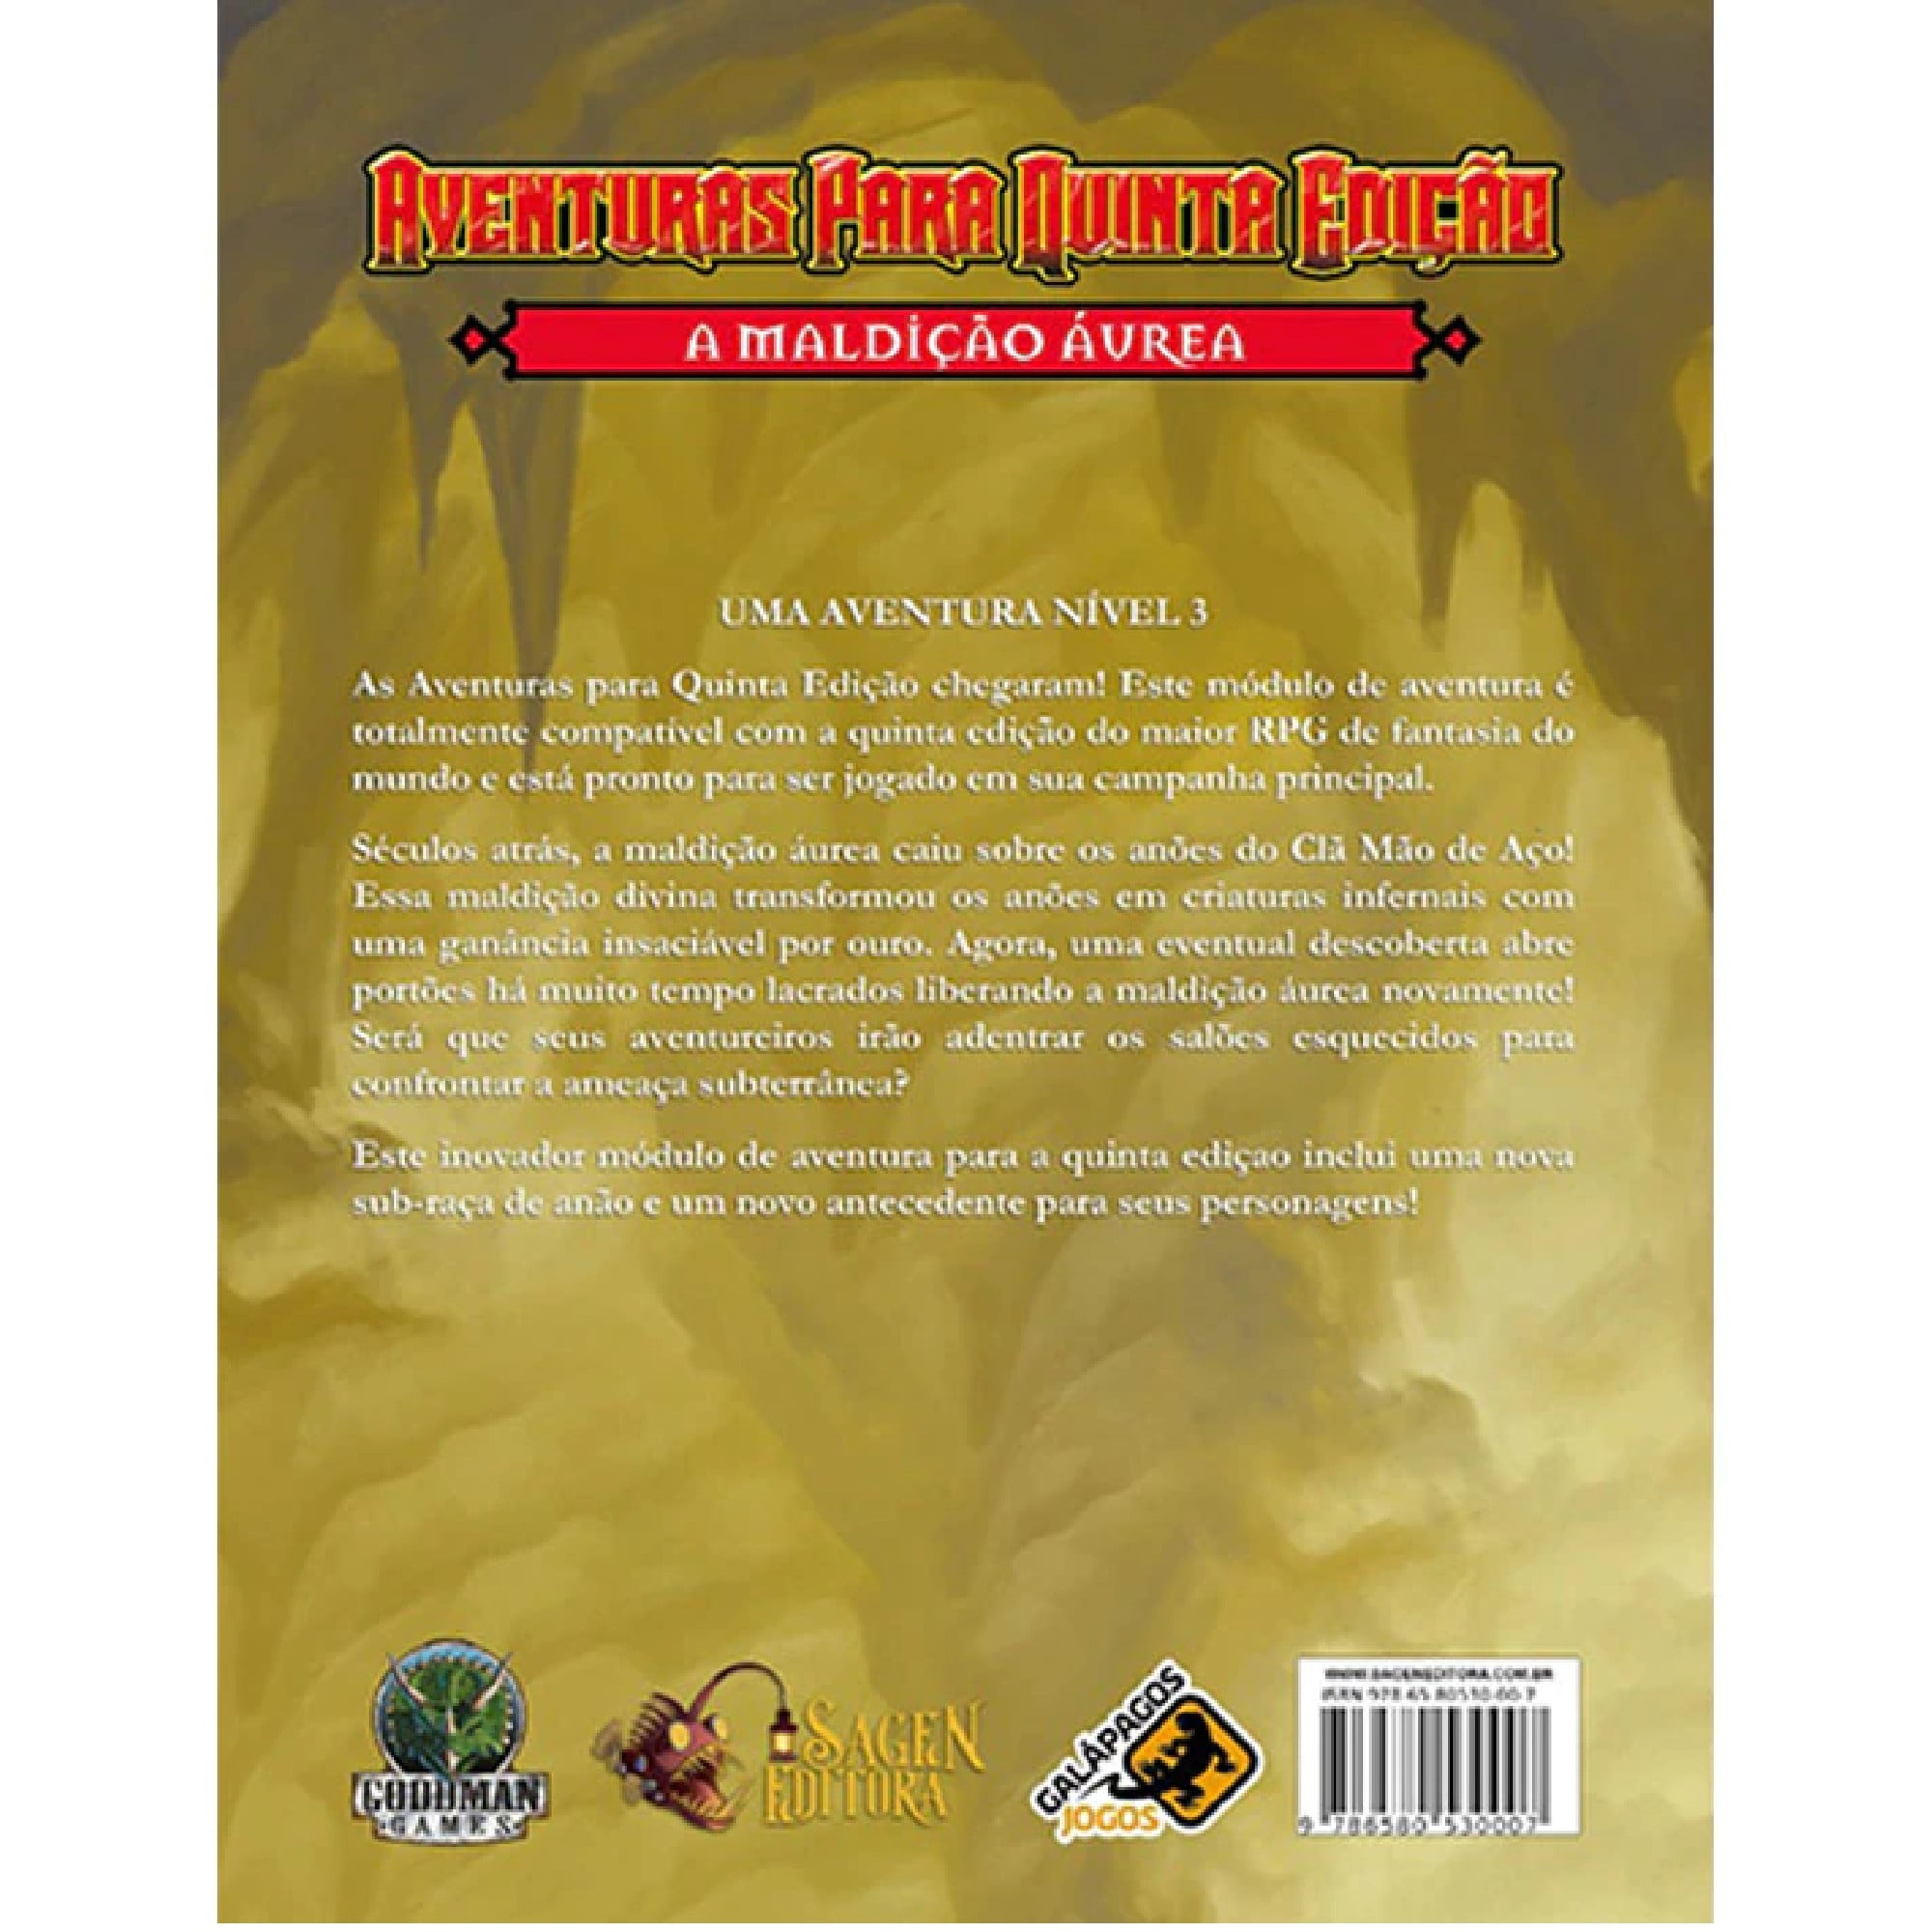 Dungeons and Dragons 5ª Edição: Guia de Xanathar para todas as coisas RPG